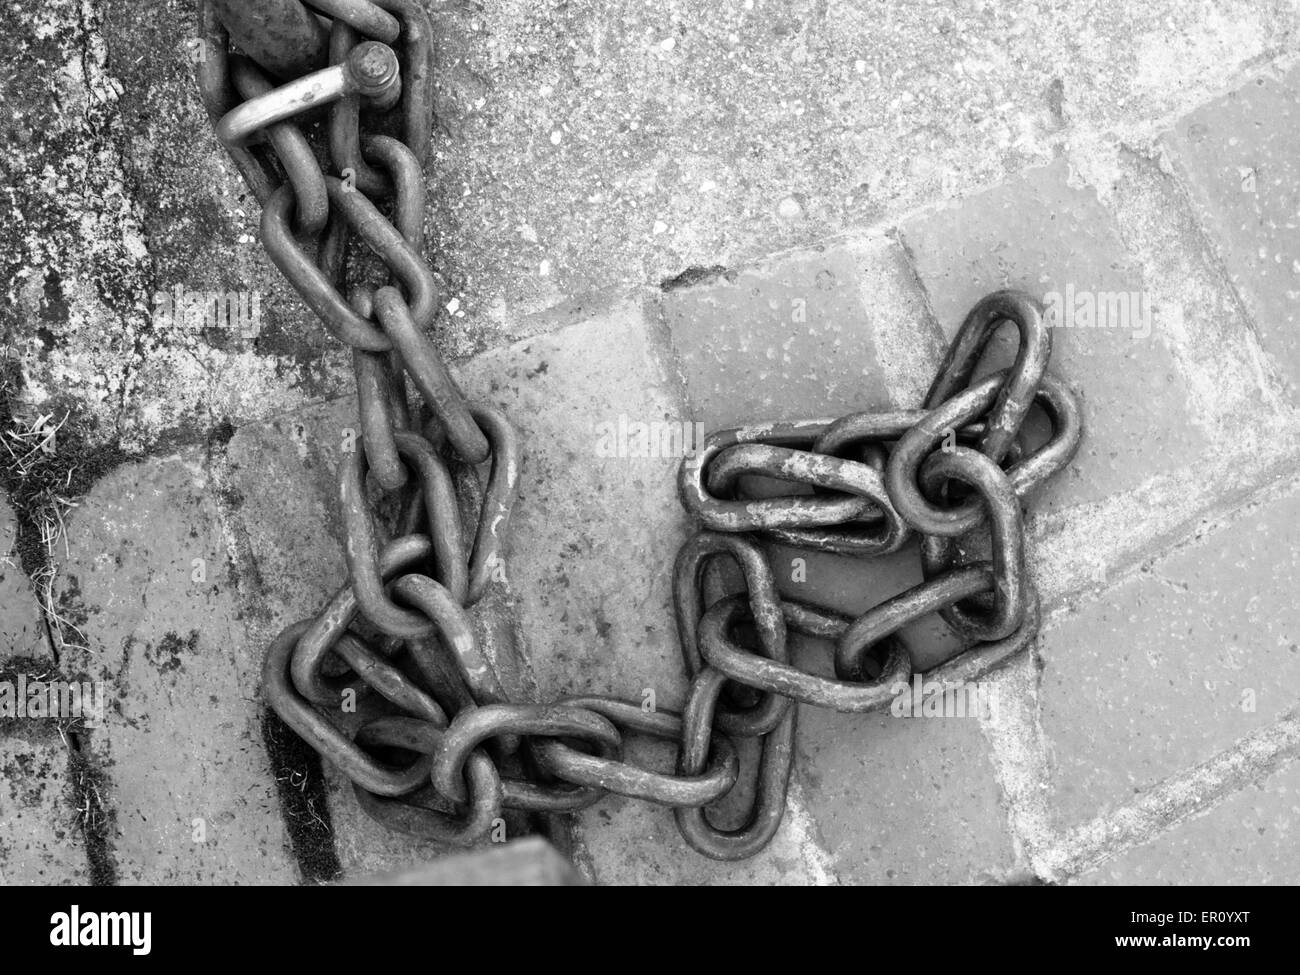 Imagen en blanco y negro de una gran cadena vinculada fijado al suelo  Fotografía de stock - Alamy